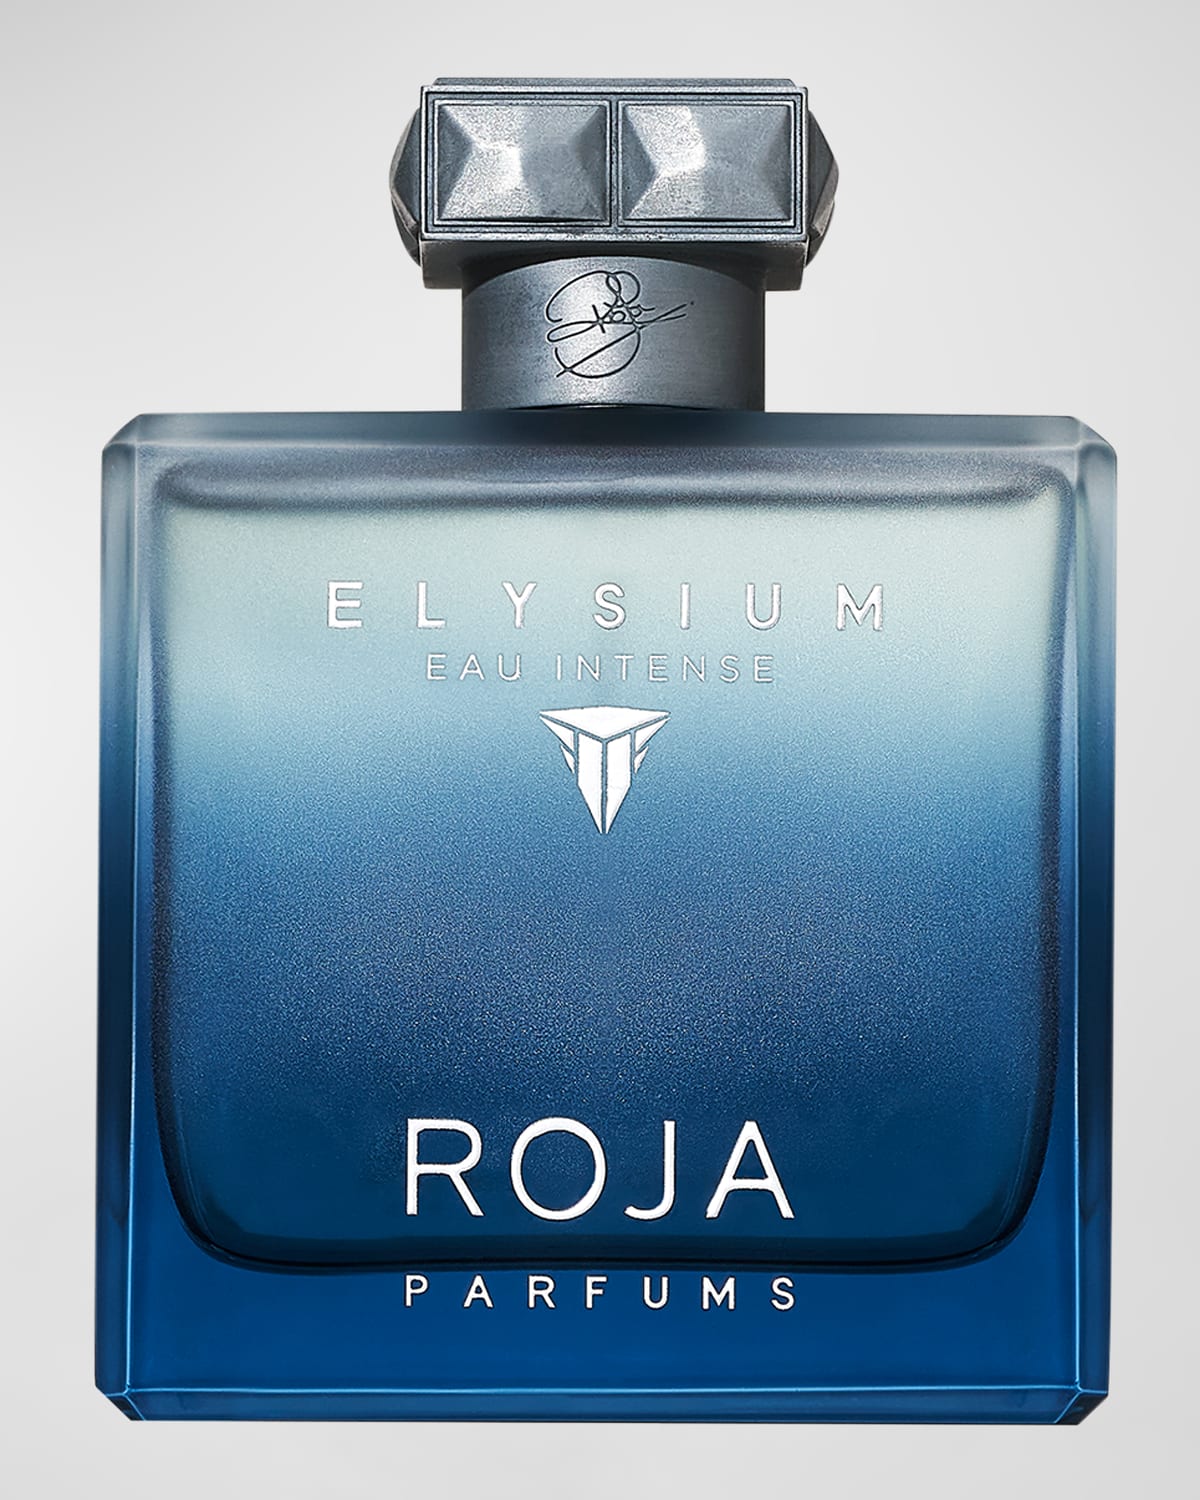 Elysium Eau Intense Eau de Parfum, 3.4 oz.